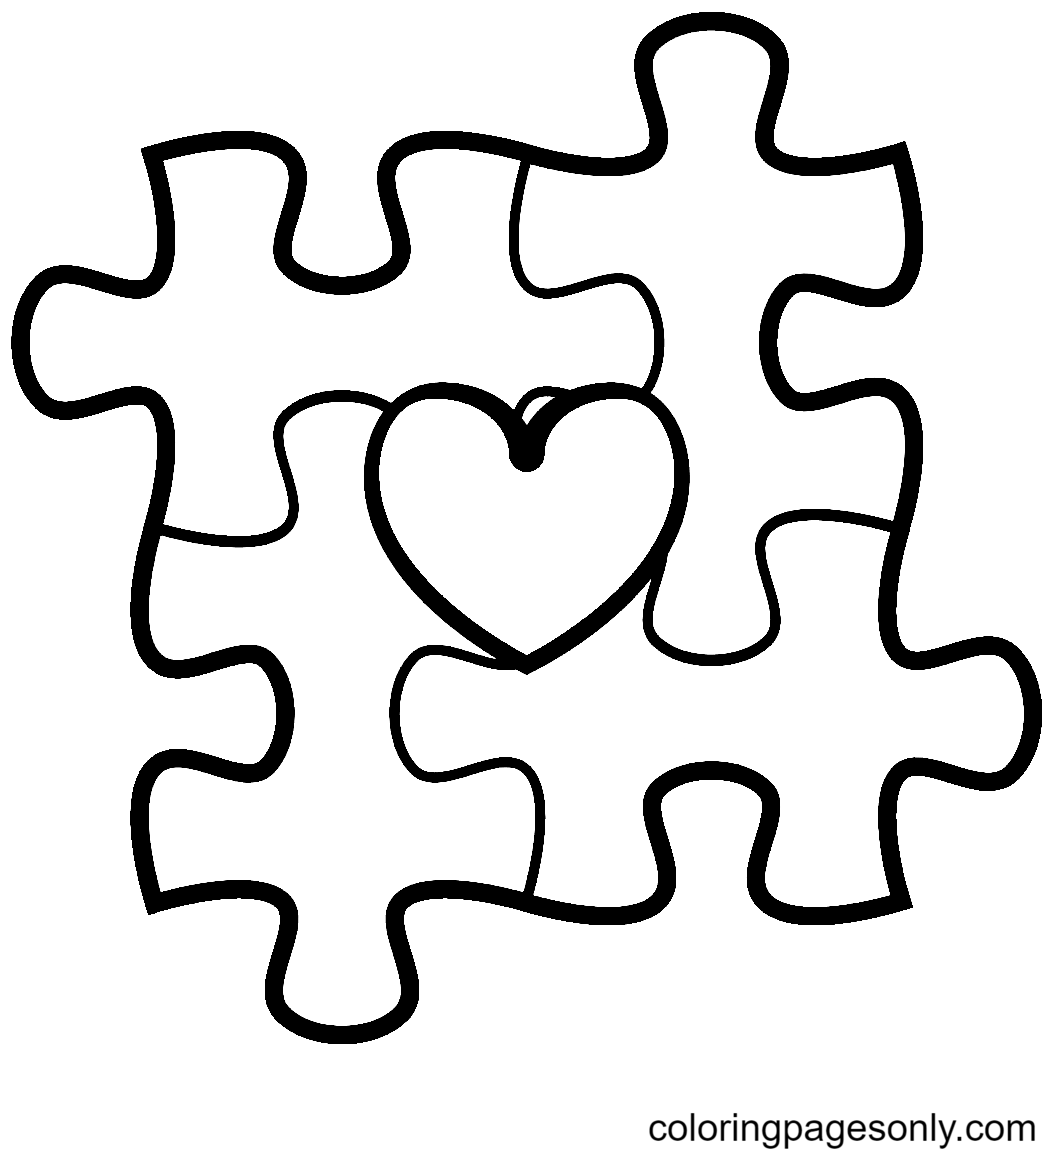 Peças do quebra-cabeça de conscientização sobre o autismo com coração do Dia Mundial de Conscientização sobre o Autismo